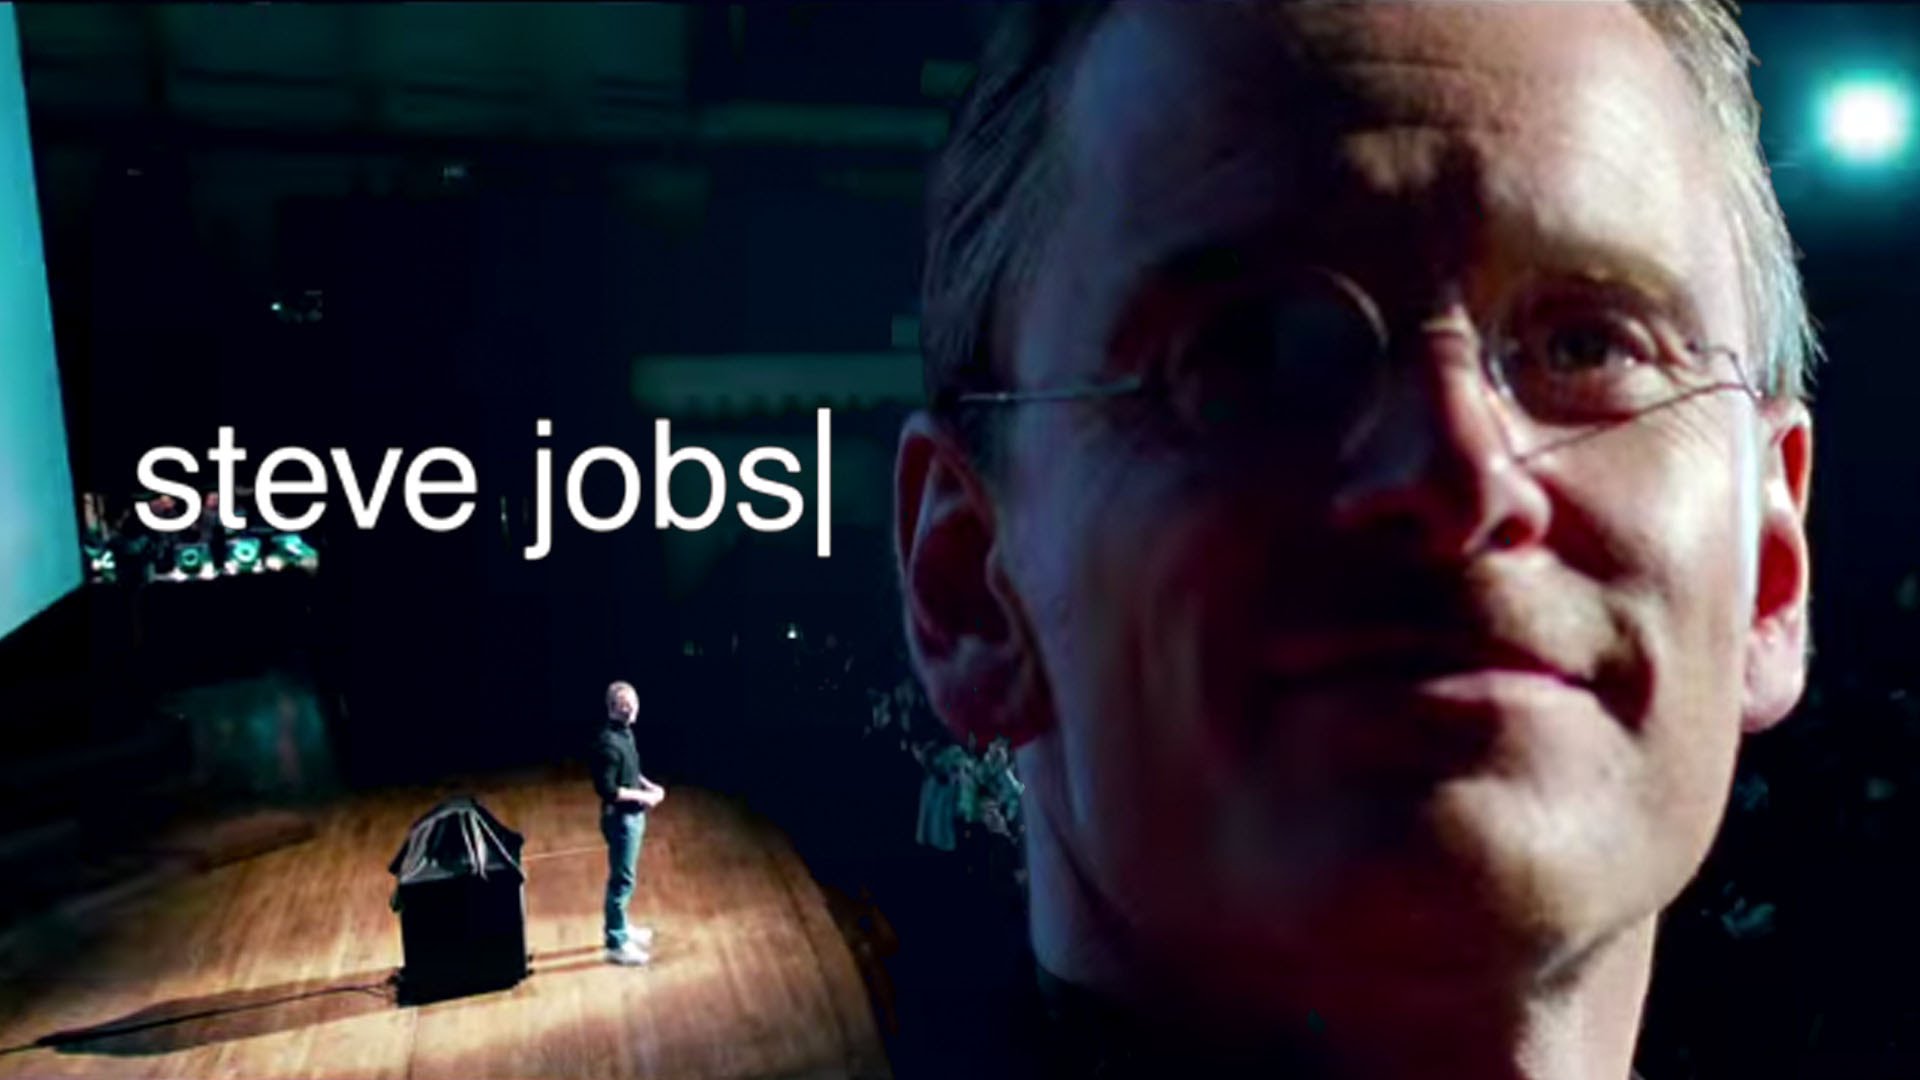 Steve Jobs - 56 yaşındayken hayatını kaybeden Apple'ın kurucusu Steve Jobs'ın hayatını konu alan belgeselin yönetmeni Alex Gibney. Steve Jobs hakkındaki bu belgesel derinlere dalıyor.